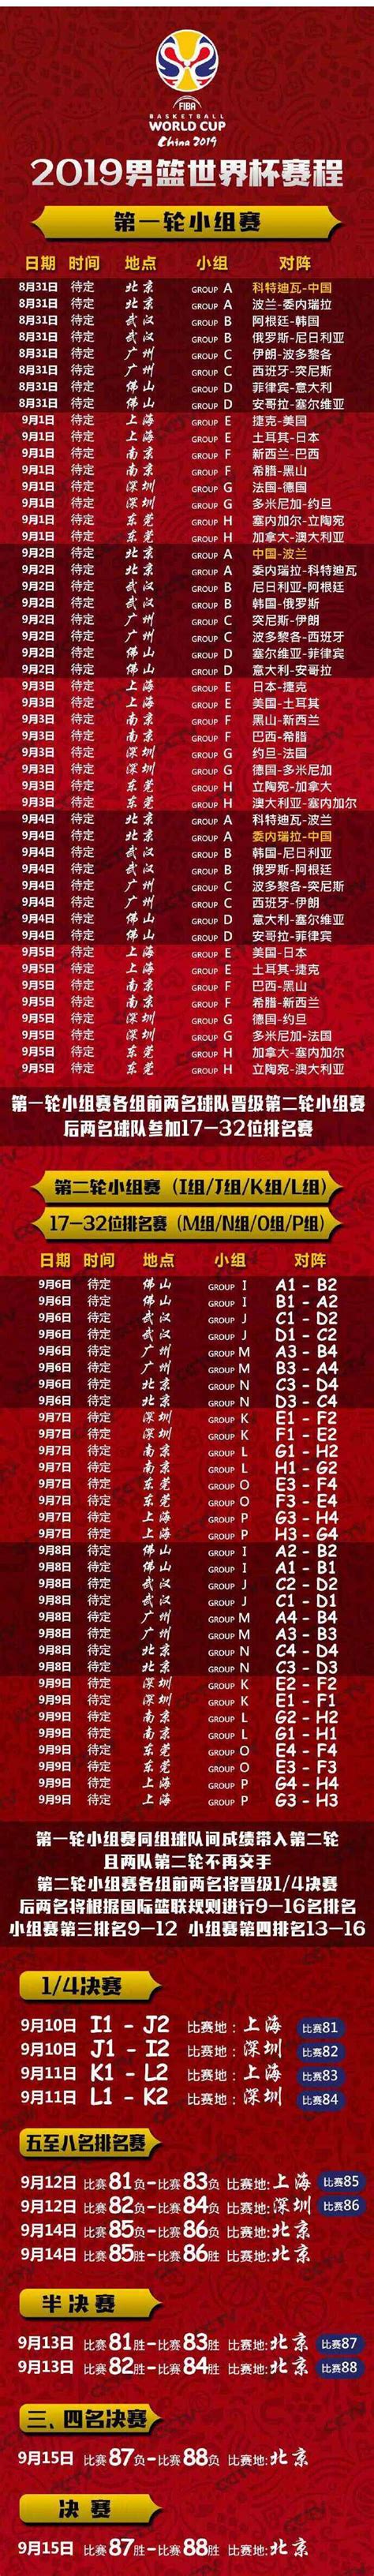 2019男篮世界杯完整赛程公布 中国男篮赛程时间表一览_ZNDS资讯